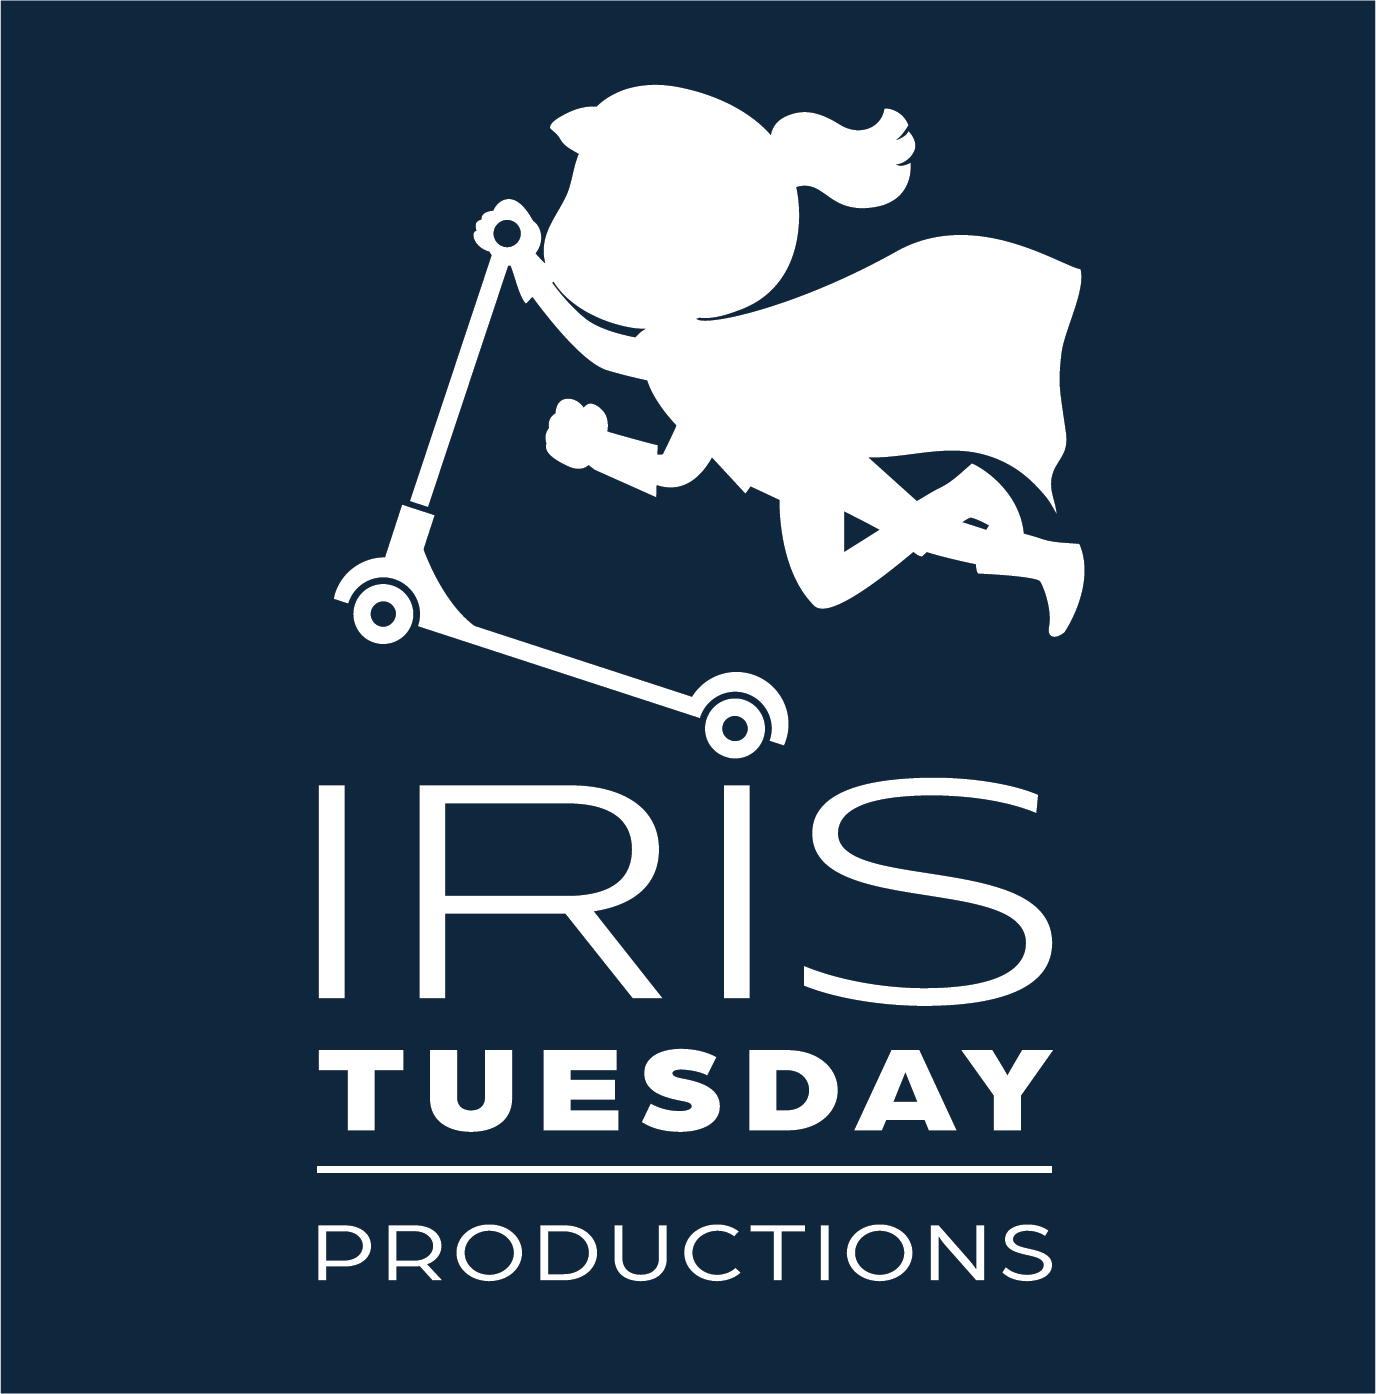 Iris Tuesday